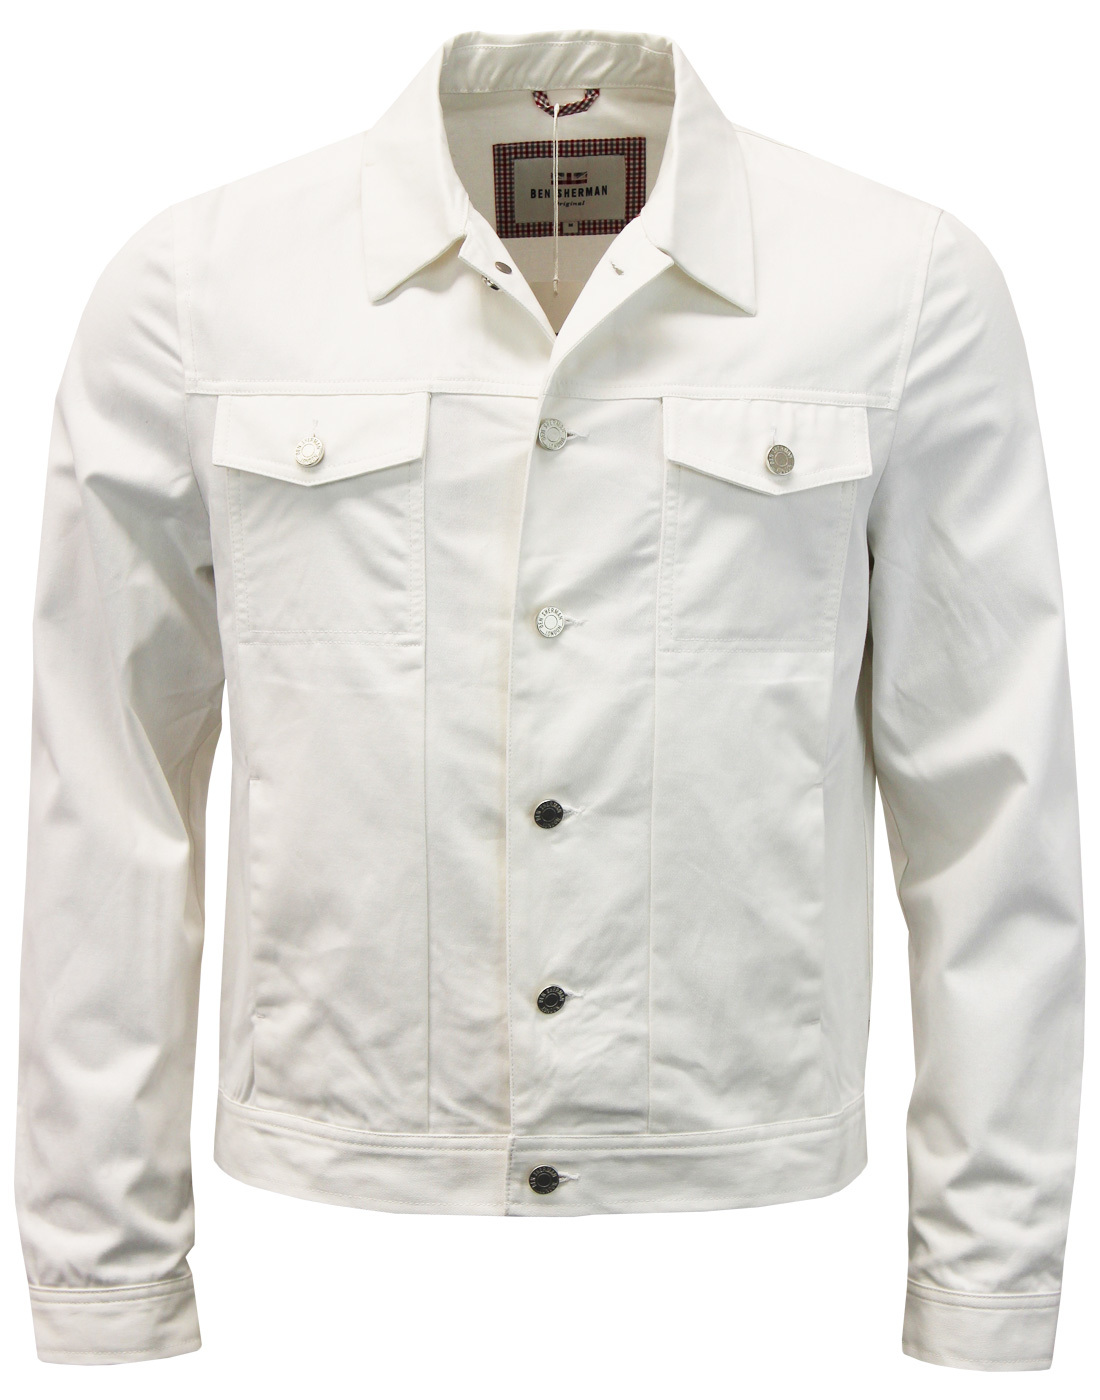 BEN SHERMAN Retro Indie Modern Trucker Jacket in Bright White